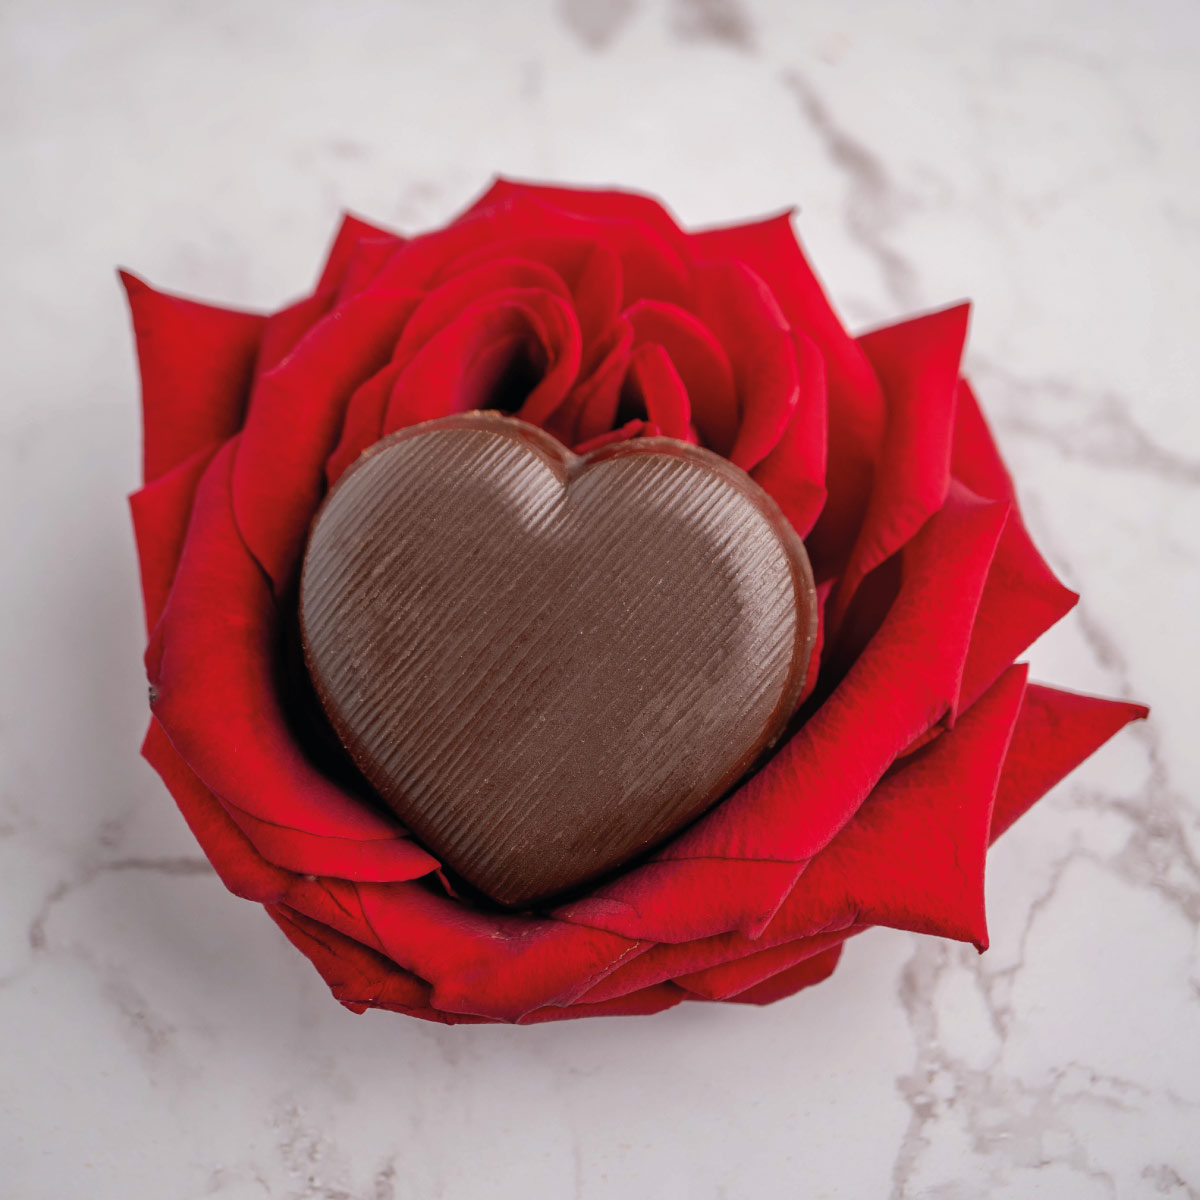 Saint-Valentin : 6 gourmandises à offrir qui ne sont PAS des chocolats!